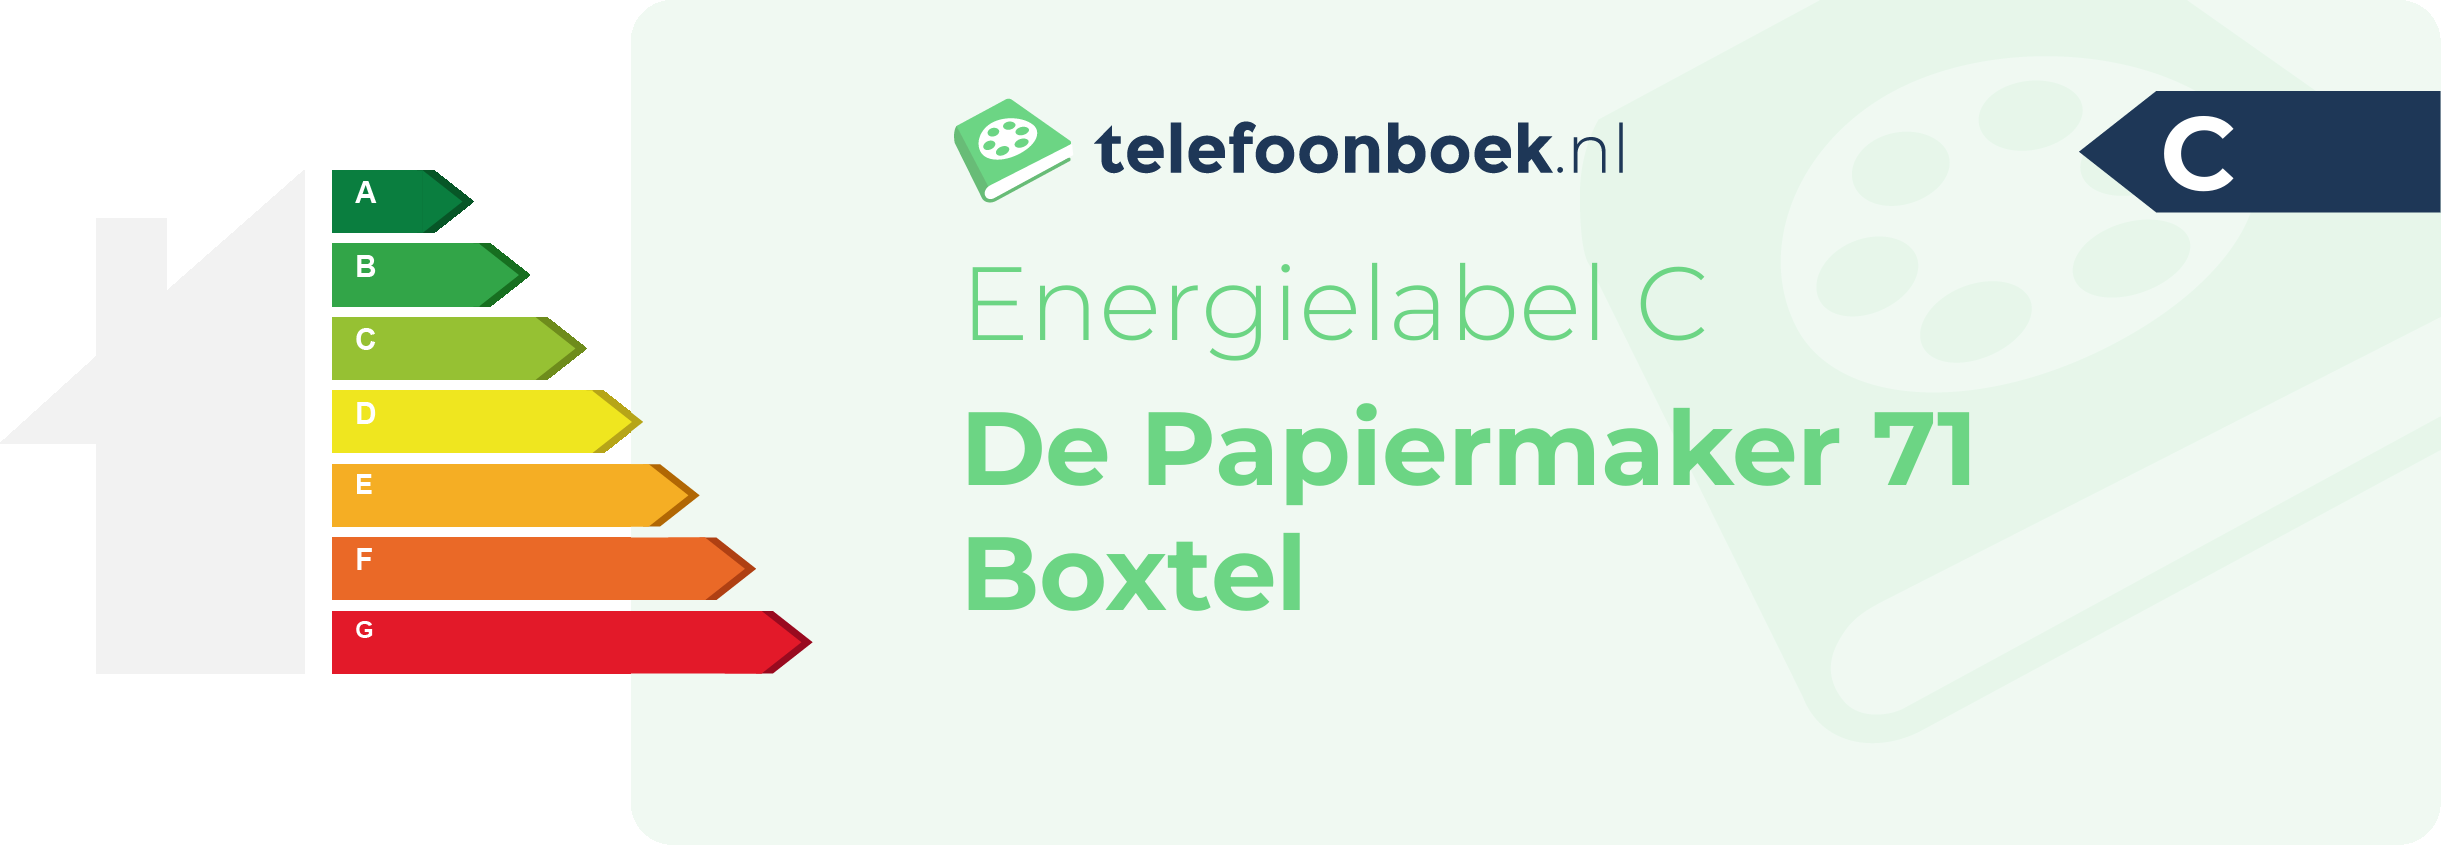 Energielabel De Papiermaker 71 Boxtel